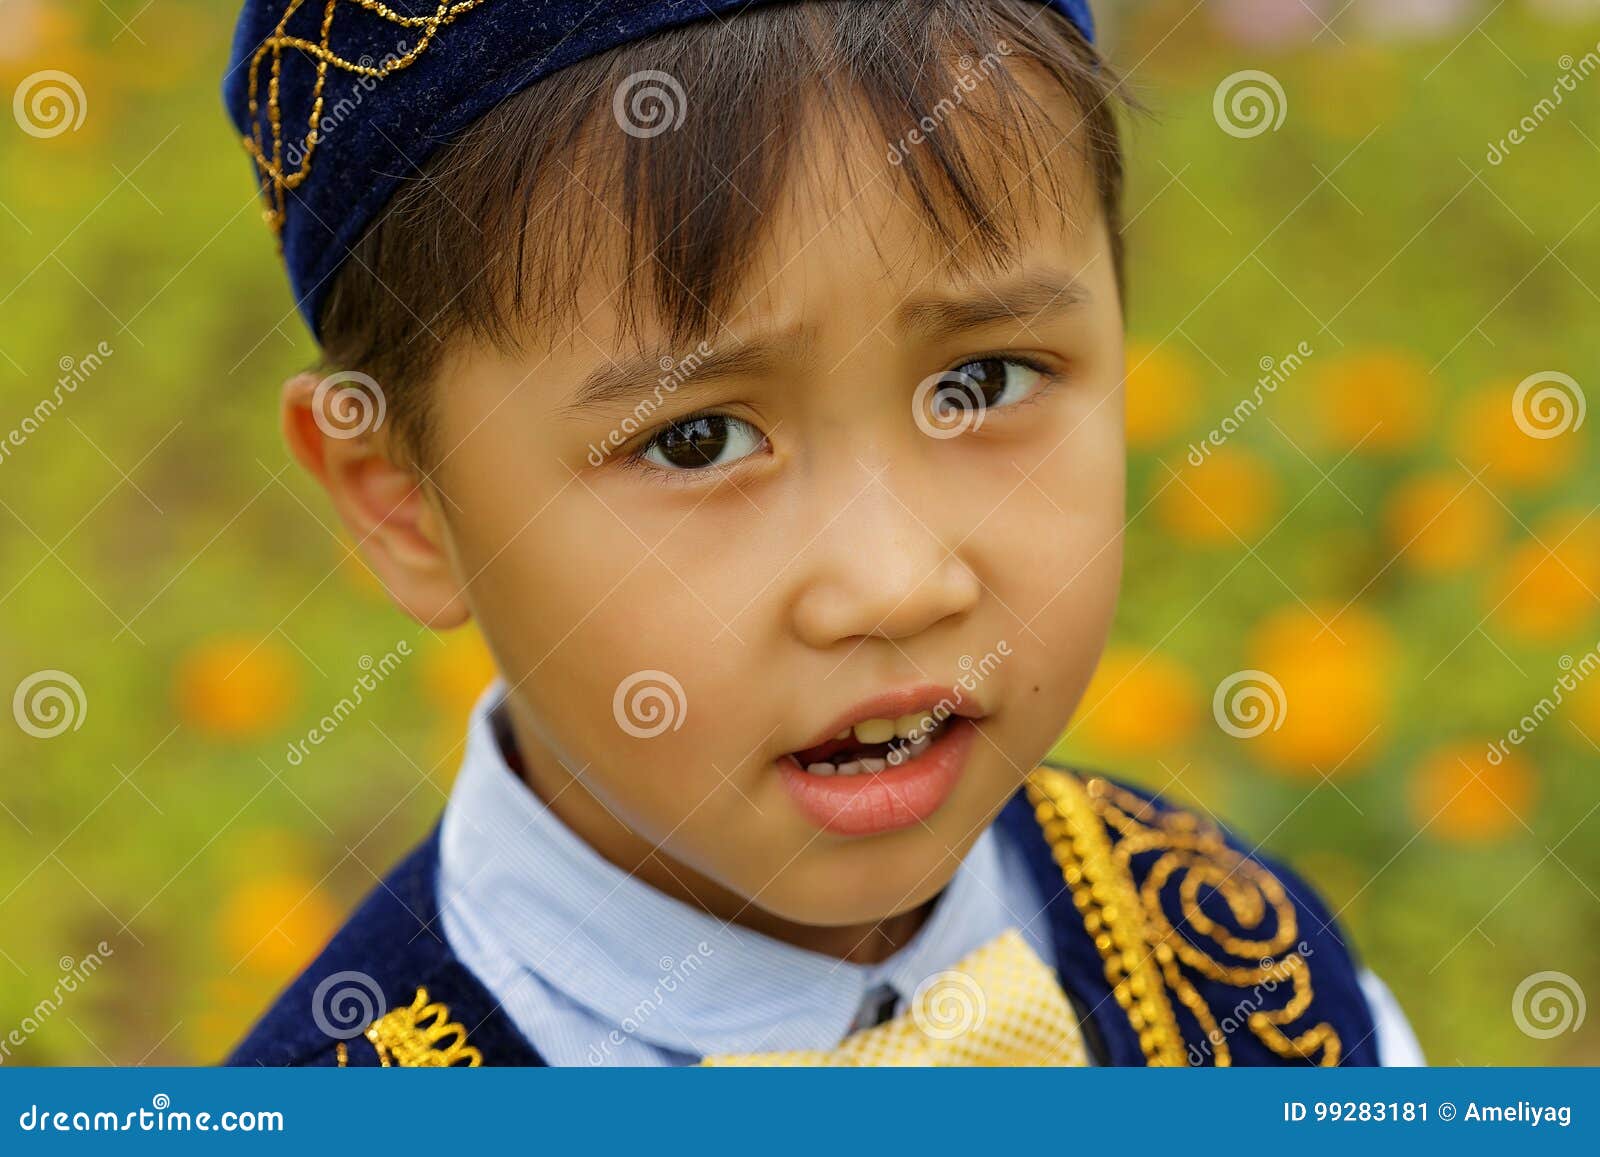 Картинка дети казахстана. Казахский мальчик. Казахский детский костюм. Башкиры дети. Мальчик башкир.